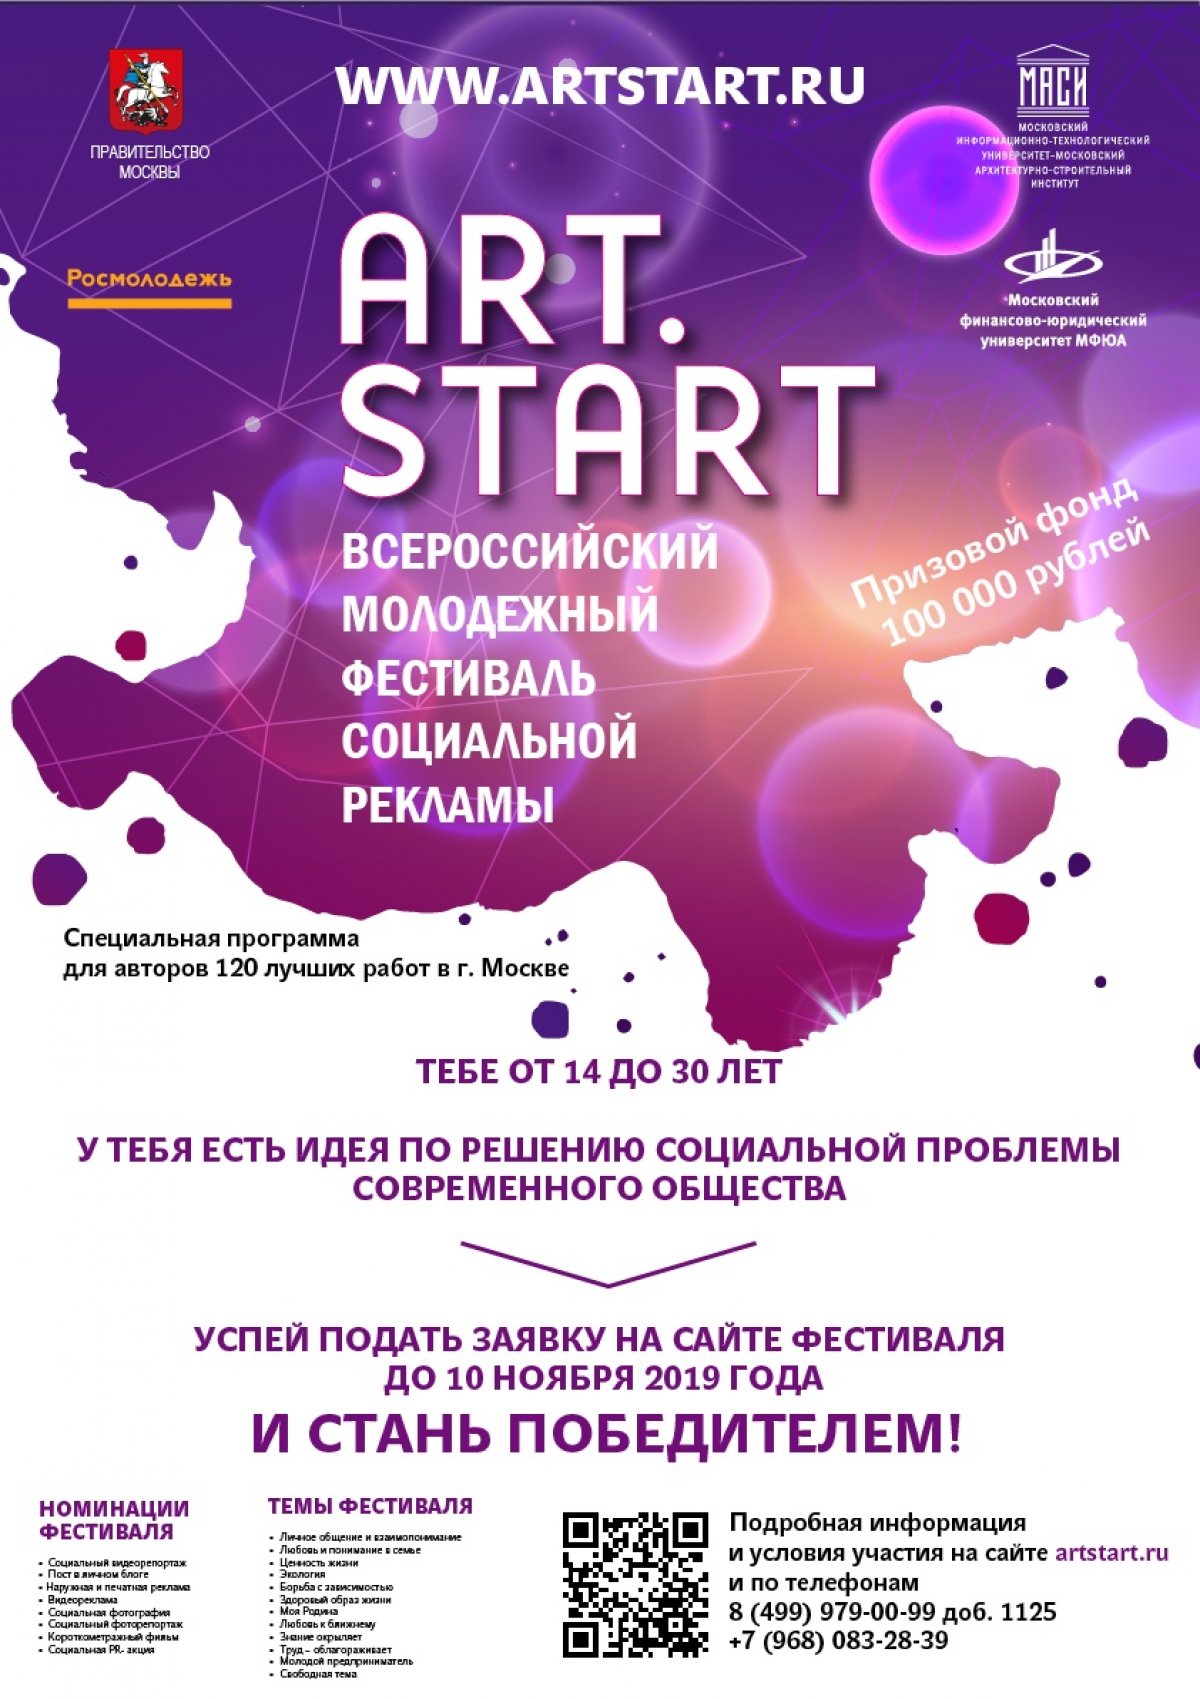 Открыт набор на участие во Всероссийском Молодежном Фестивале социальной рекламы ART.START